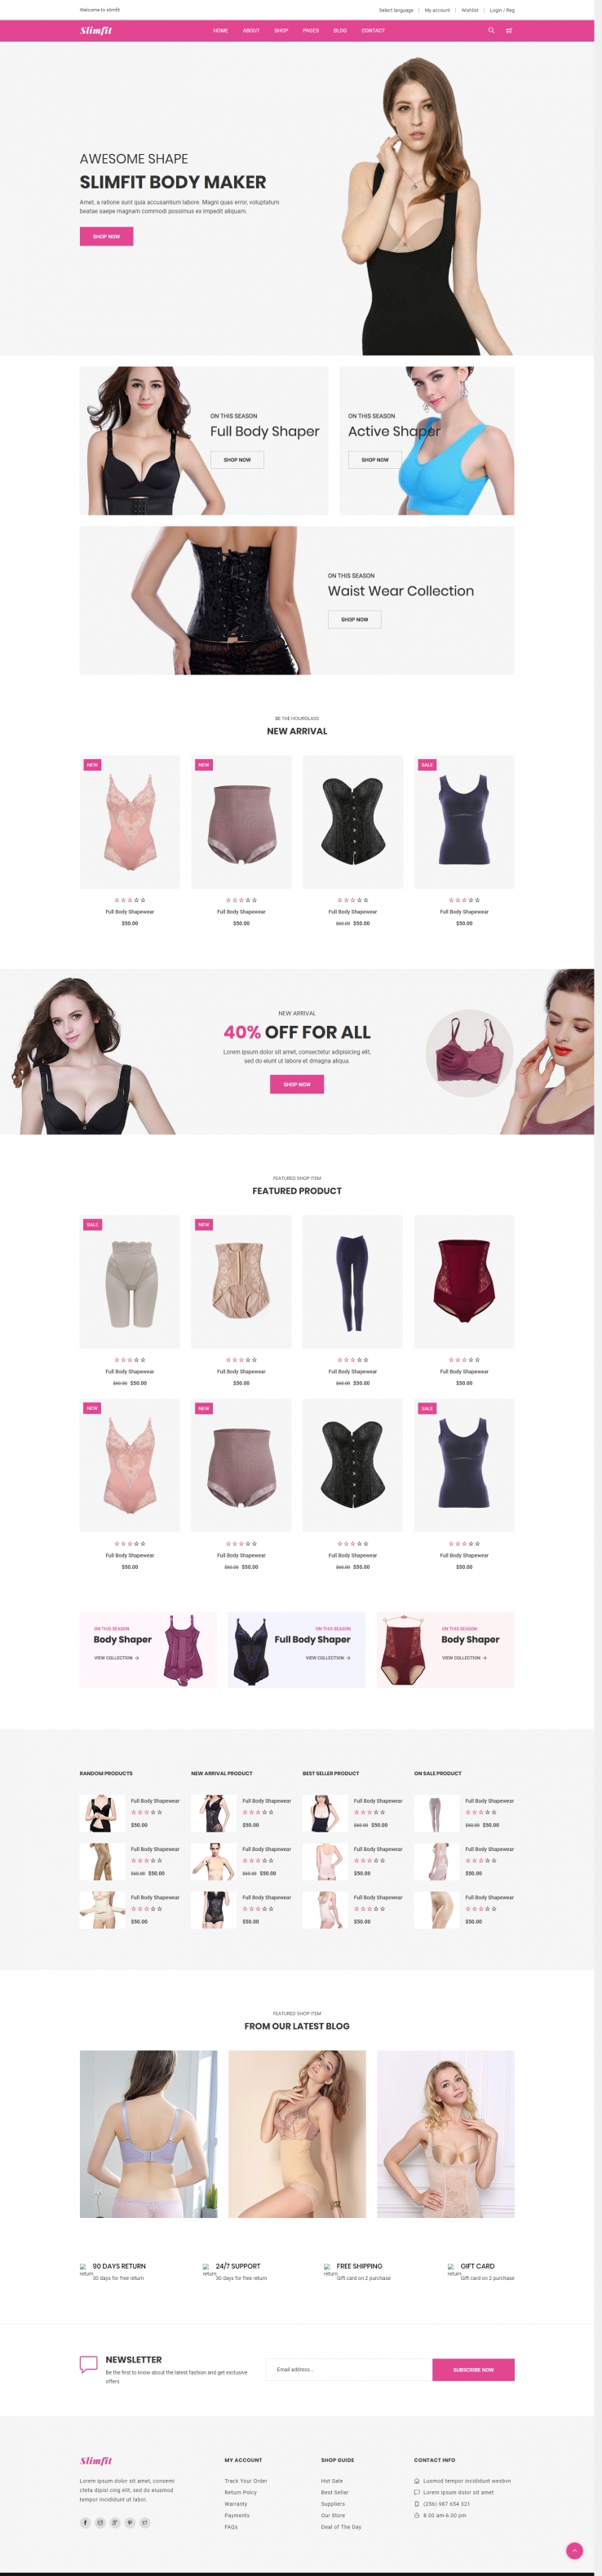 粉色欧美风格的女性塑形内衣商城整站网站源码下载